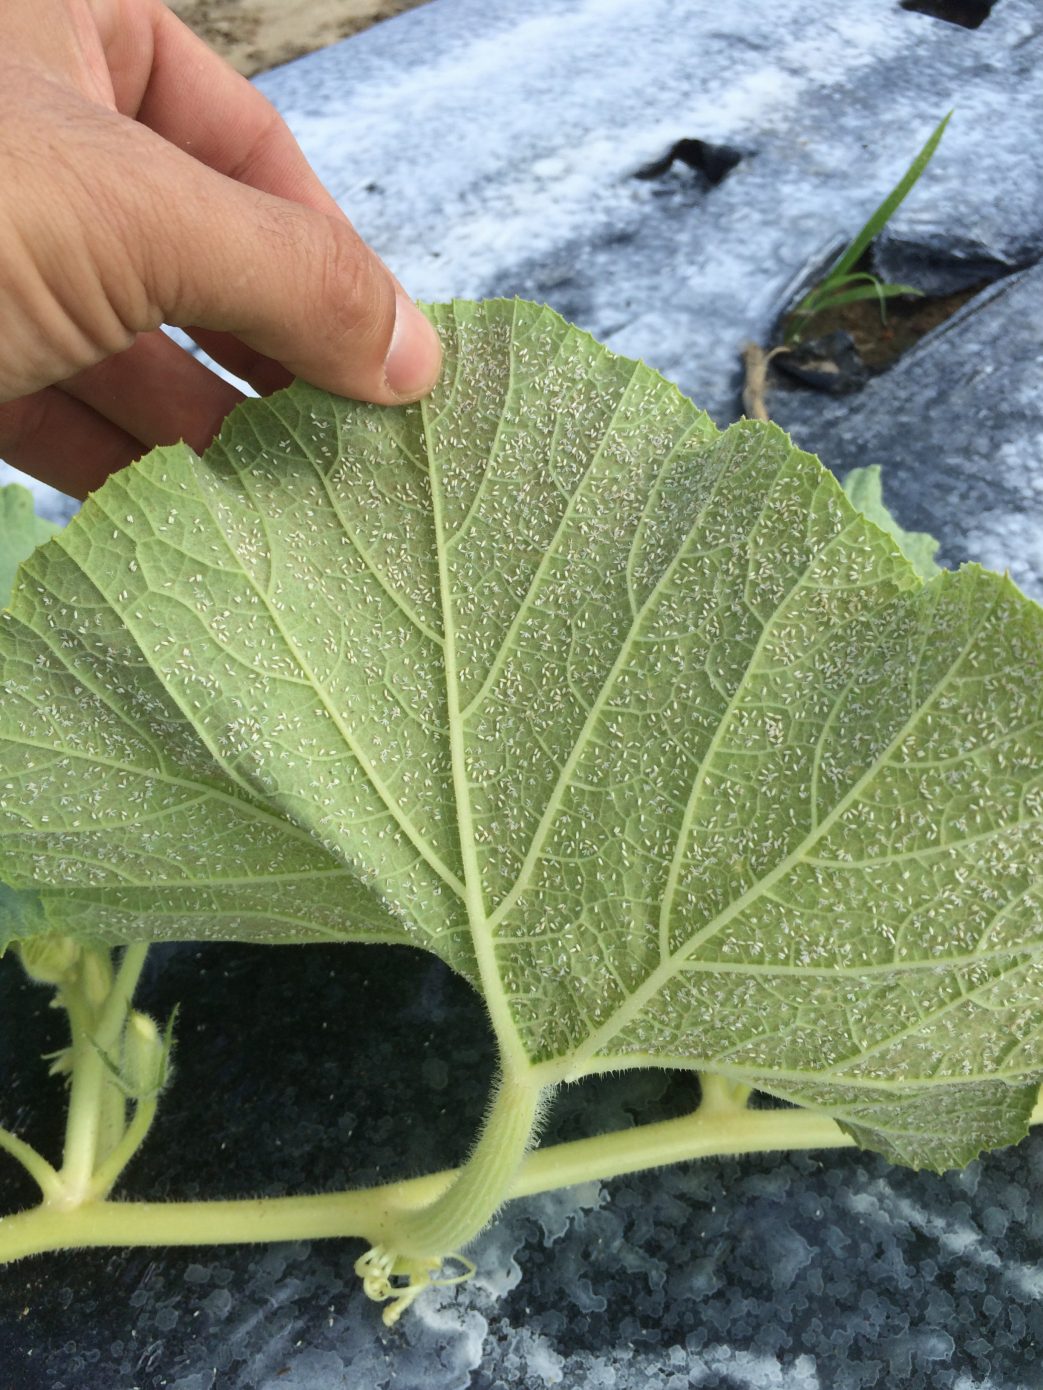 white flies on underside of leaf